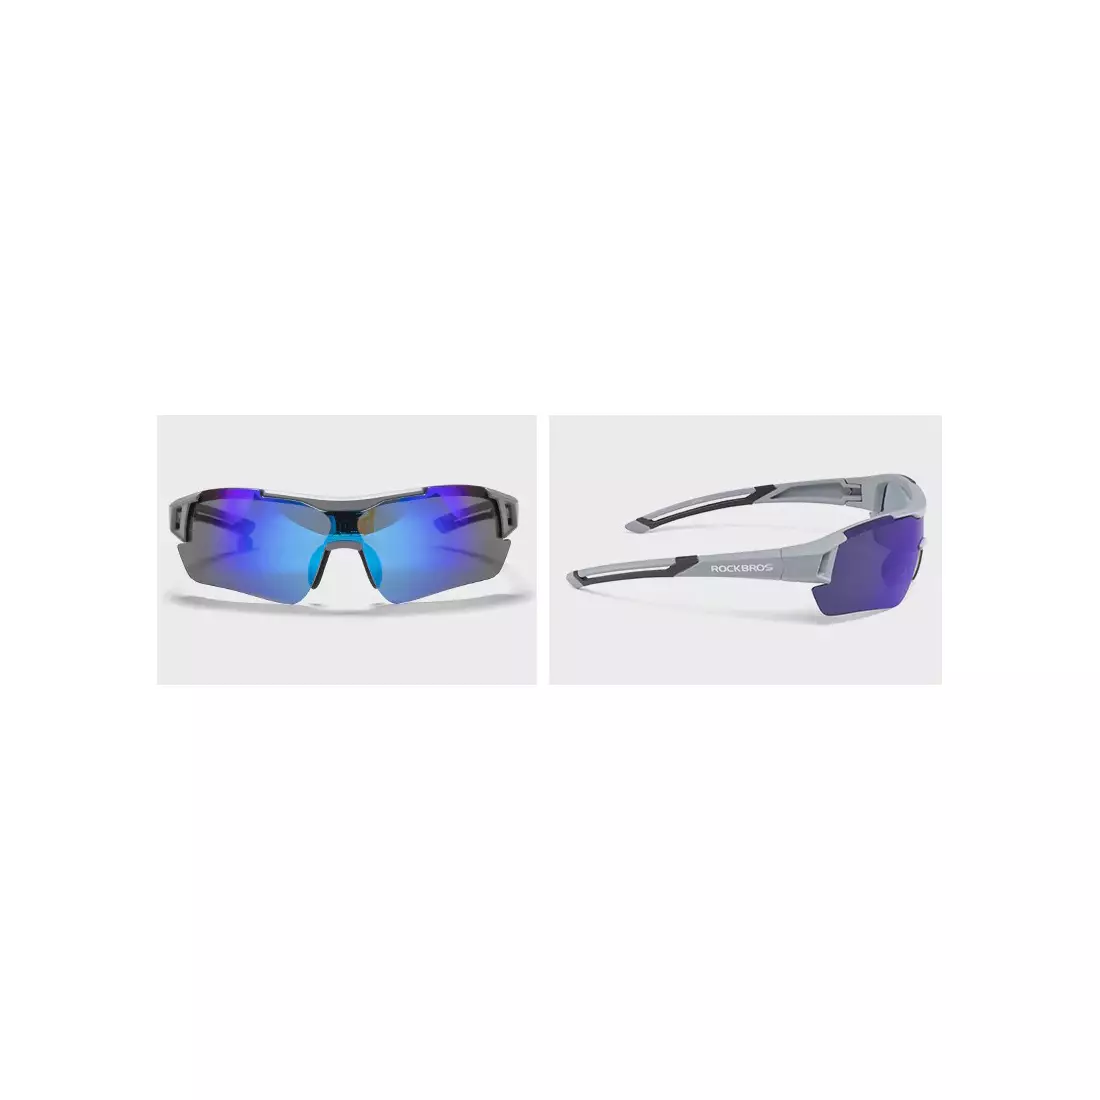 Rockbros 10117 Polarizované športové okuliare + korekčná vložka black-grey 